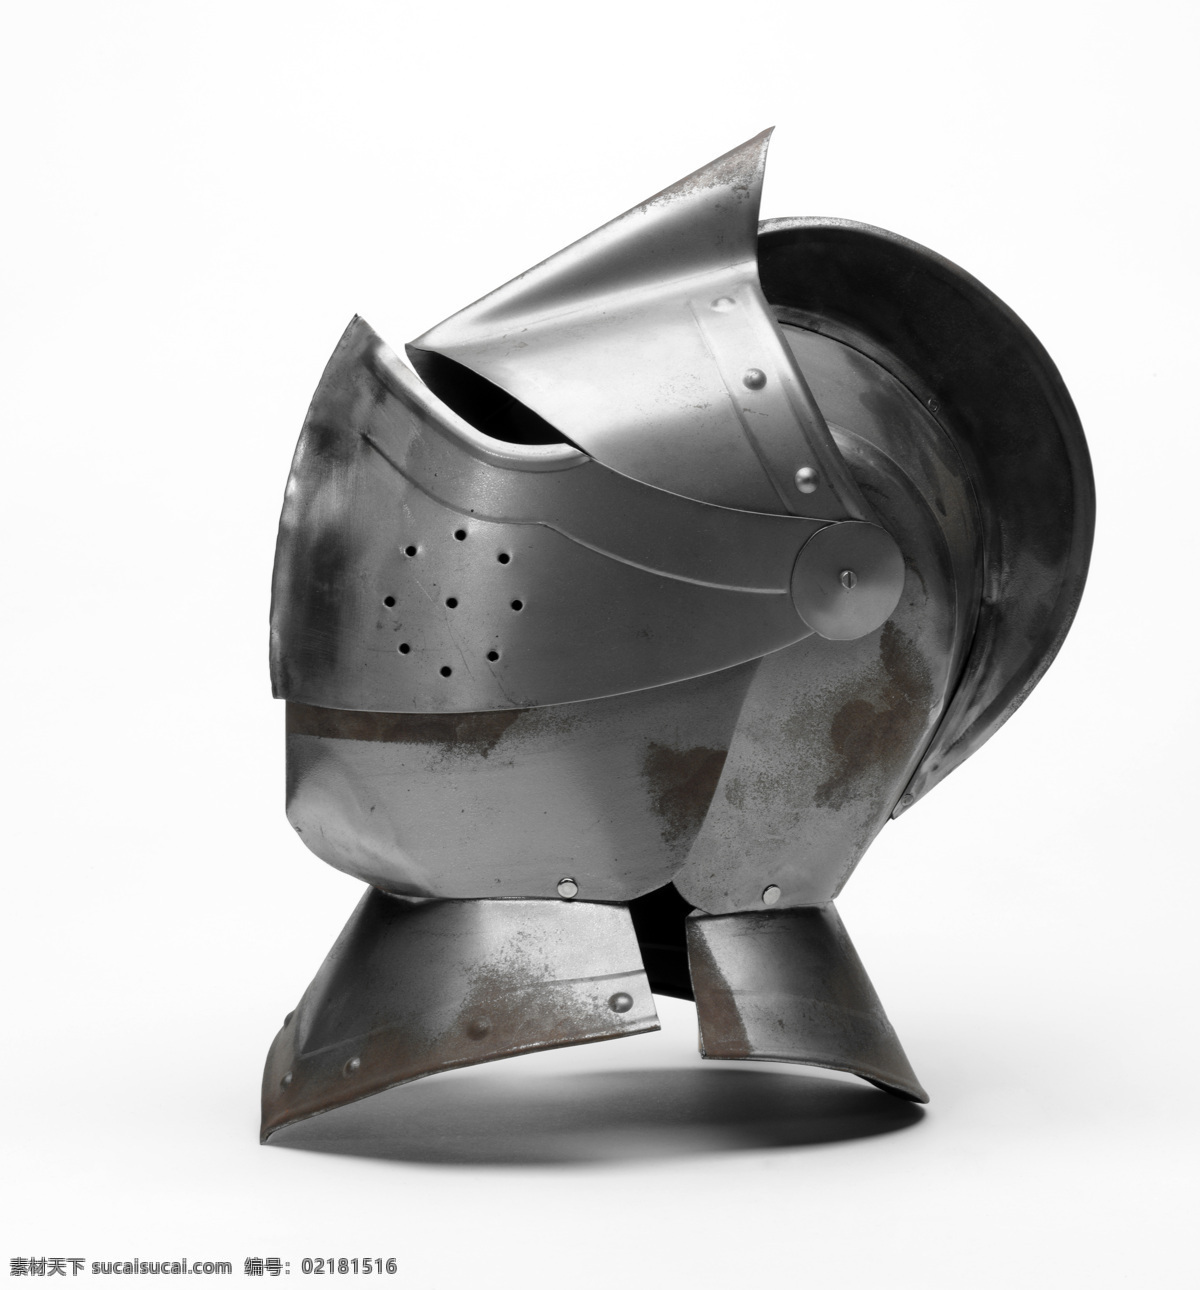 欧洲 古代 士兵 头盔 骑士 盔甲 帽子 士兵头盔 其他类别 生活百科